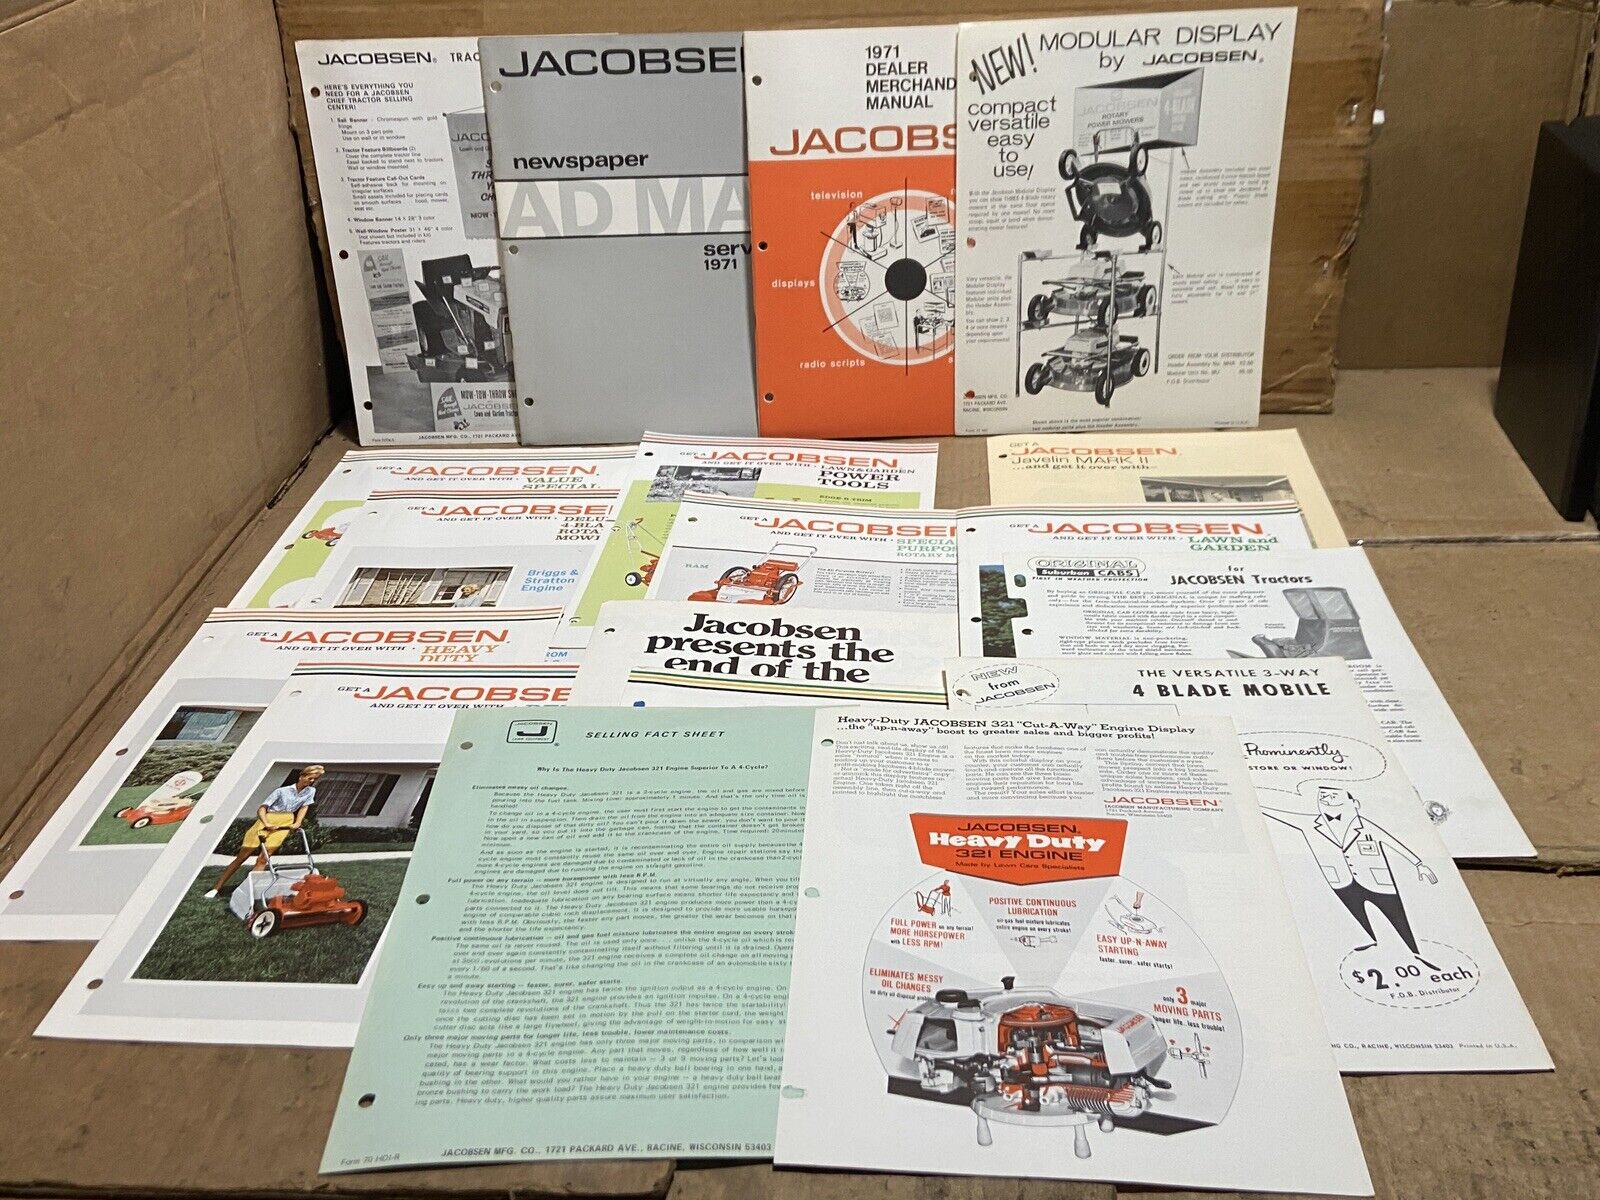 1970 1971 Jacobsen Dealer Merchandising, Advertising Catalog & Tractor Brochures